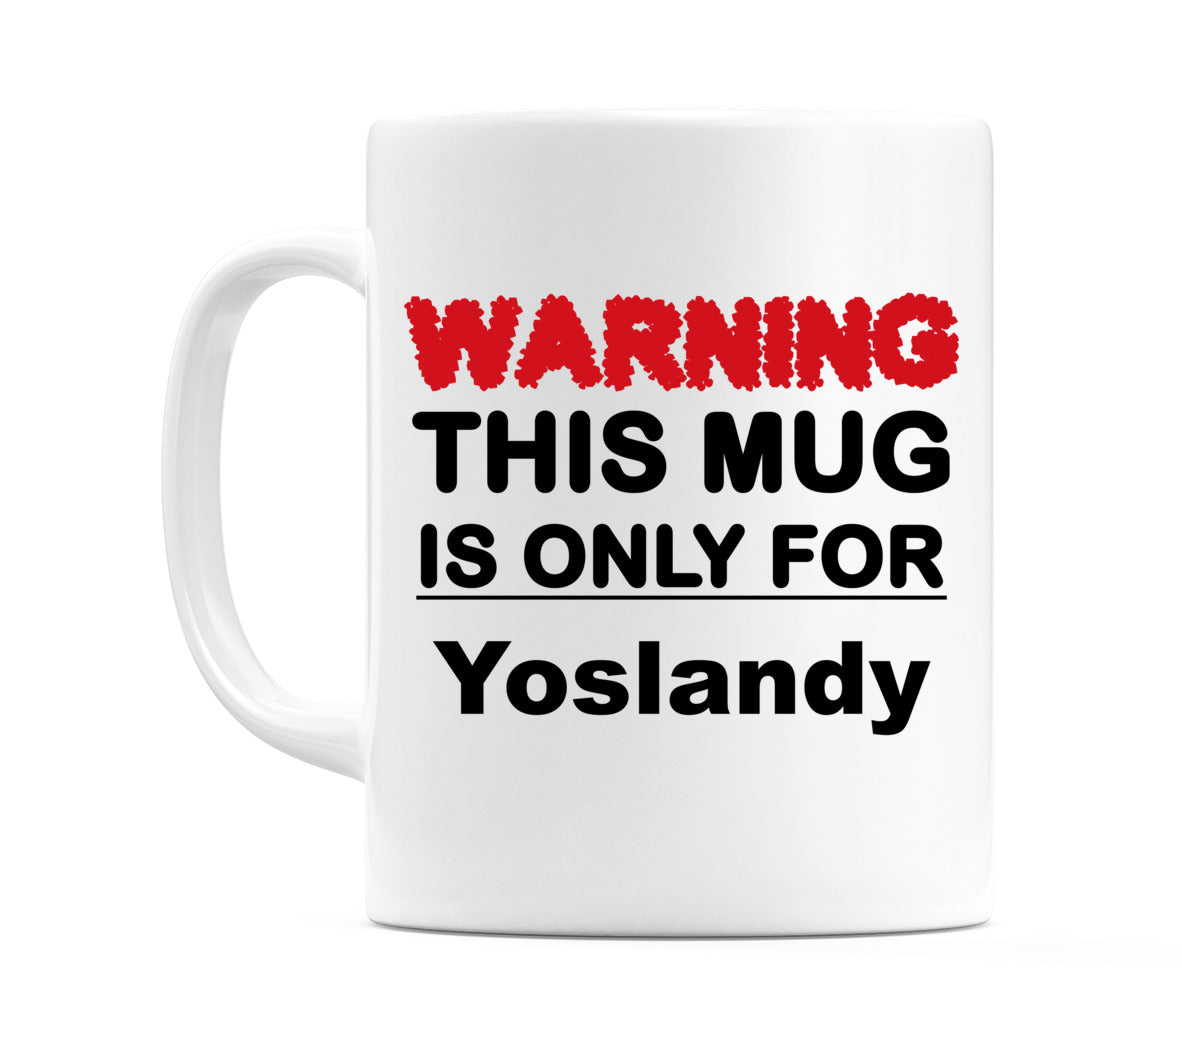 Warning This Mug is ONLY for Yoslandy Mug